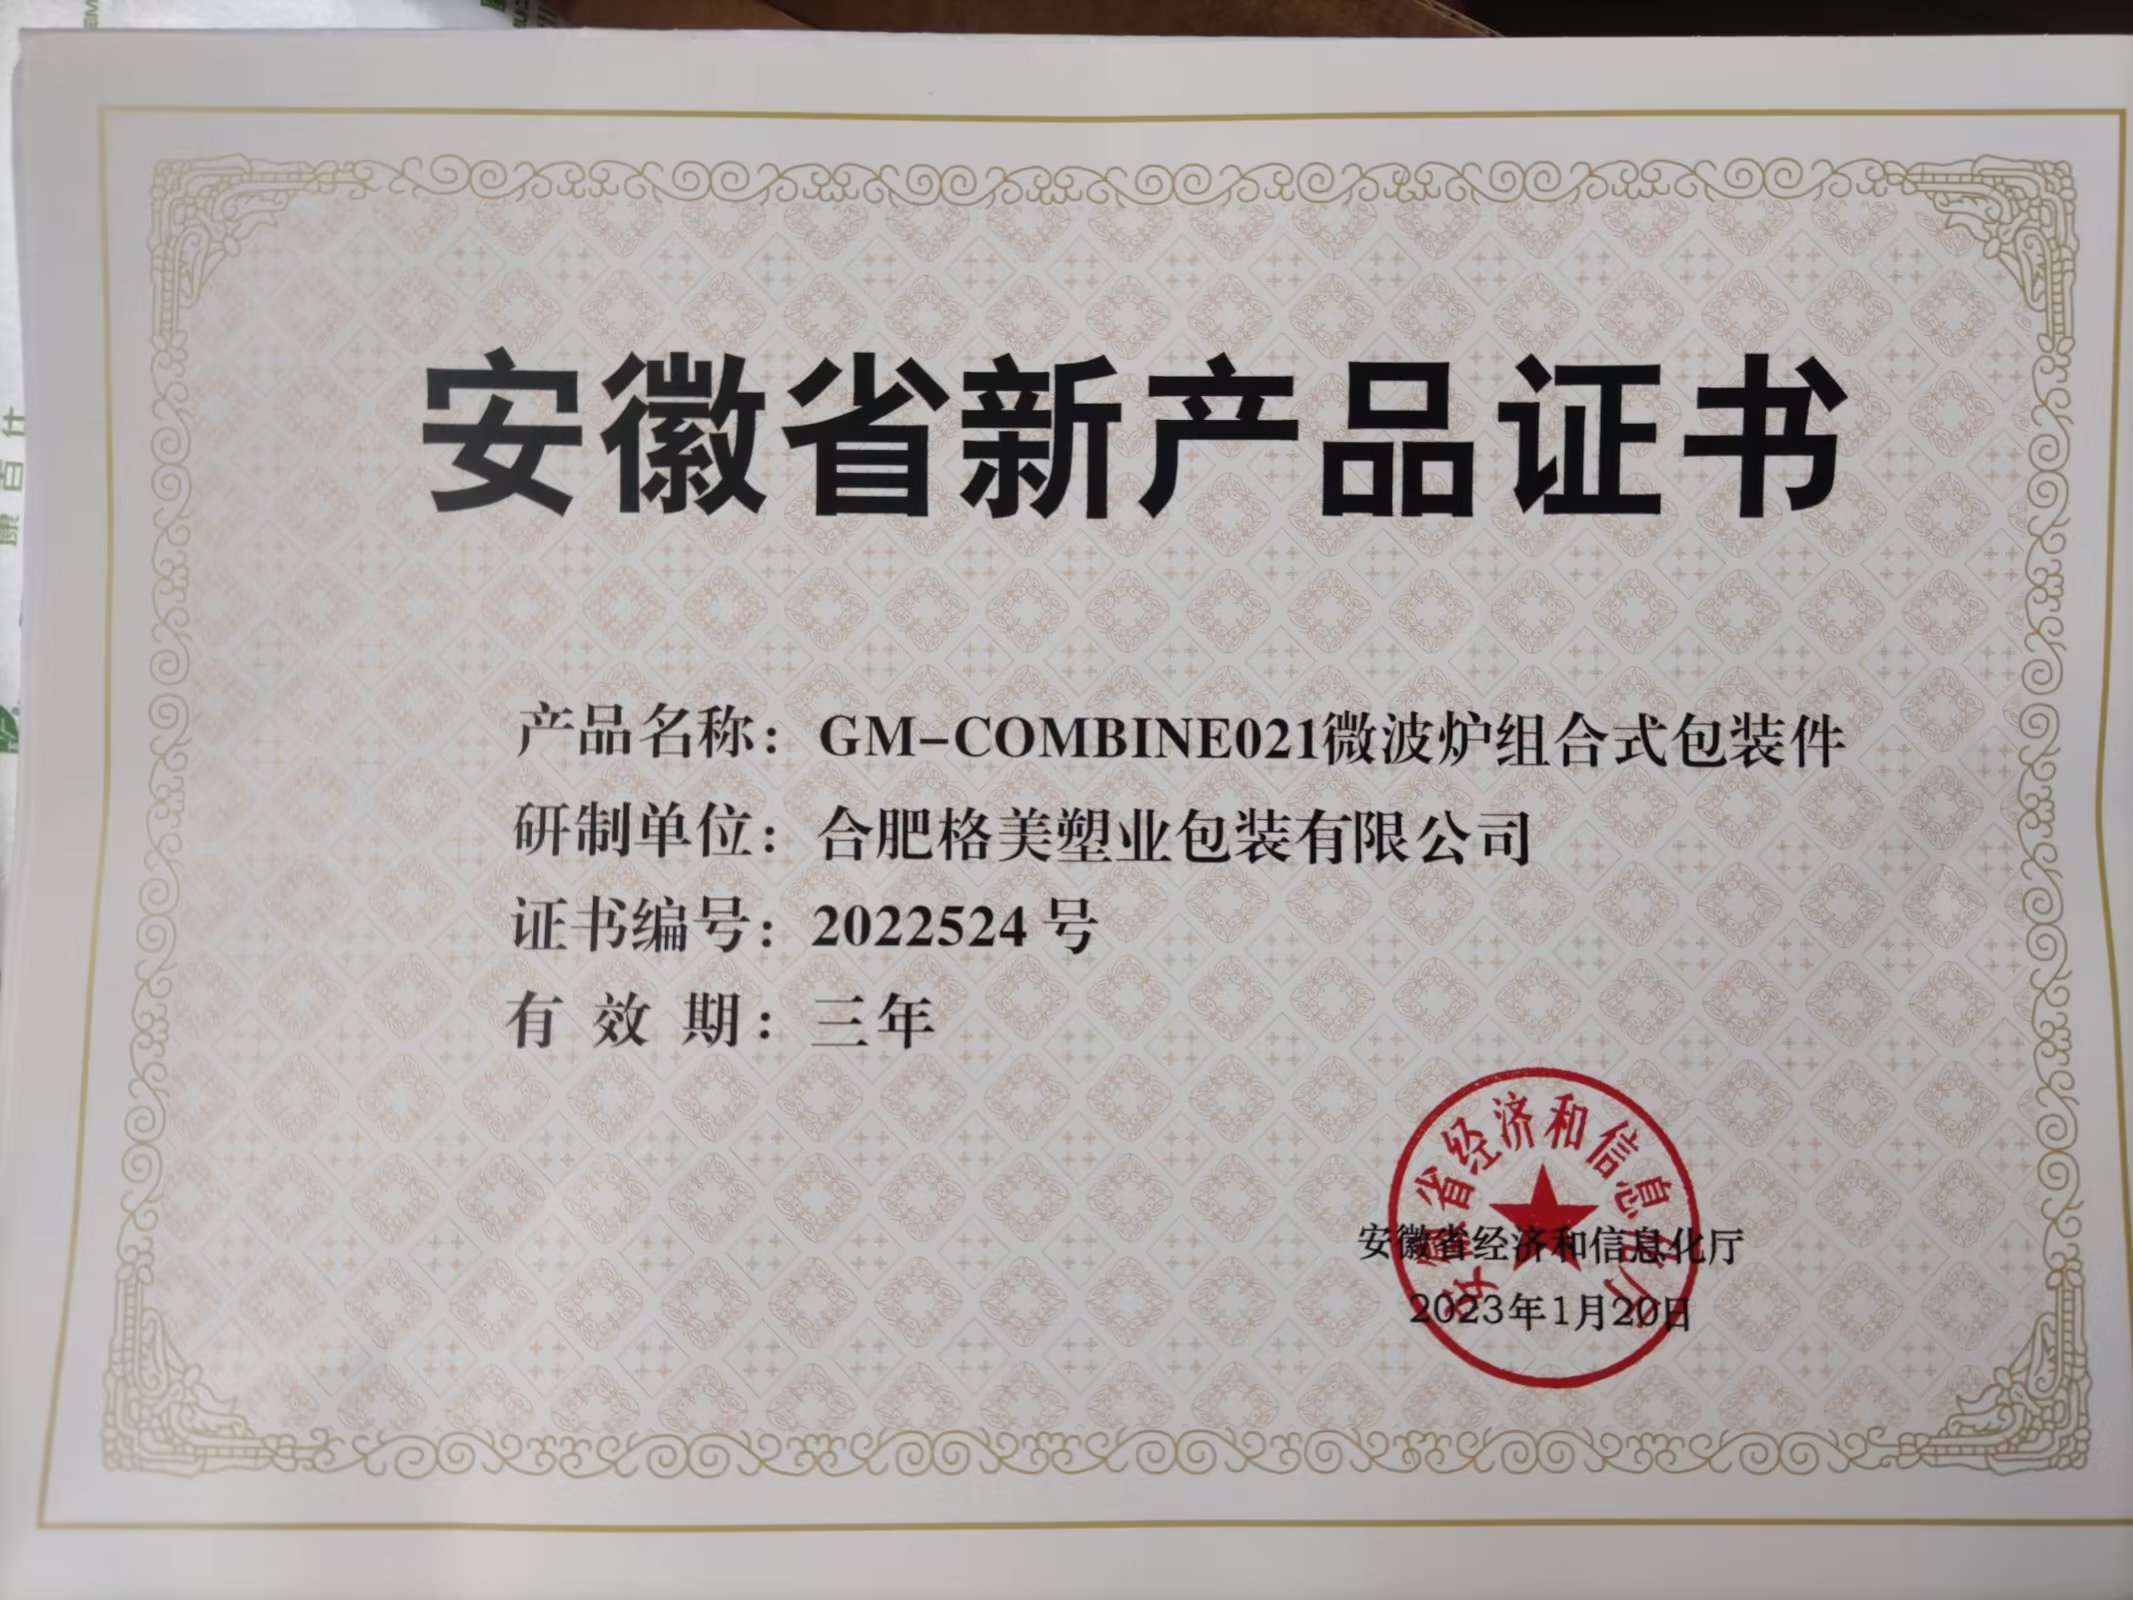 熱烈慶祝公司榮獲安徽省經濟和信息化廳頒發的“安徽省新產品證書”